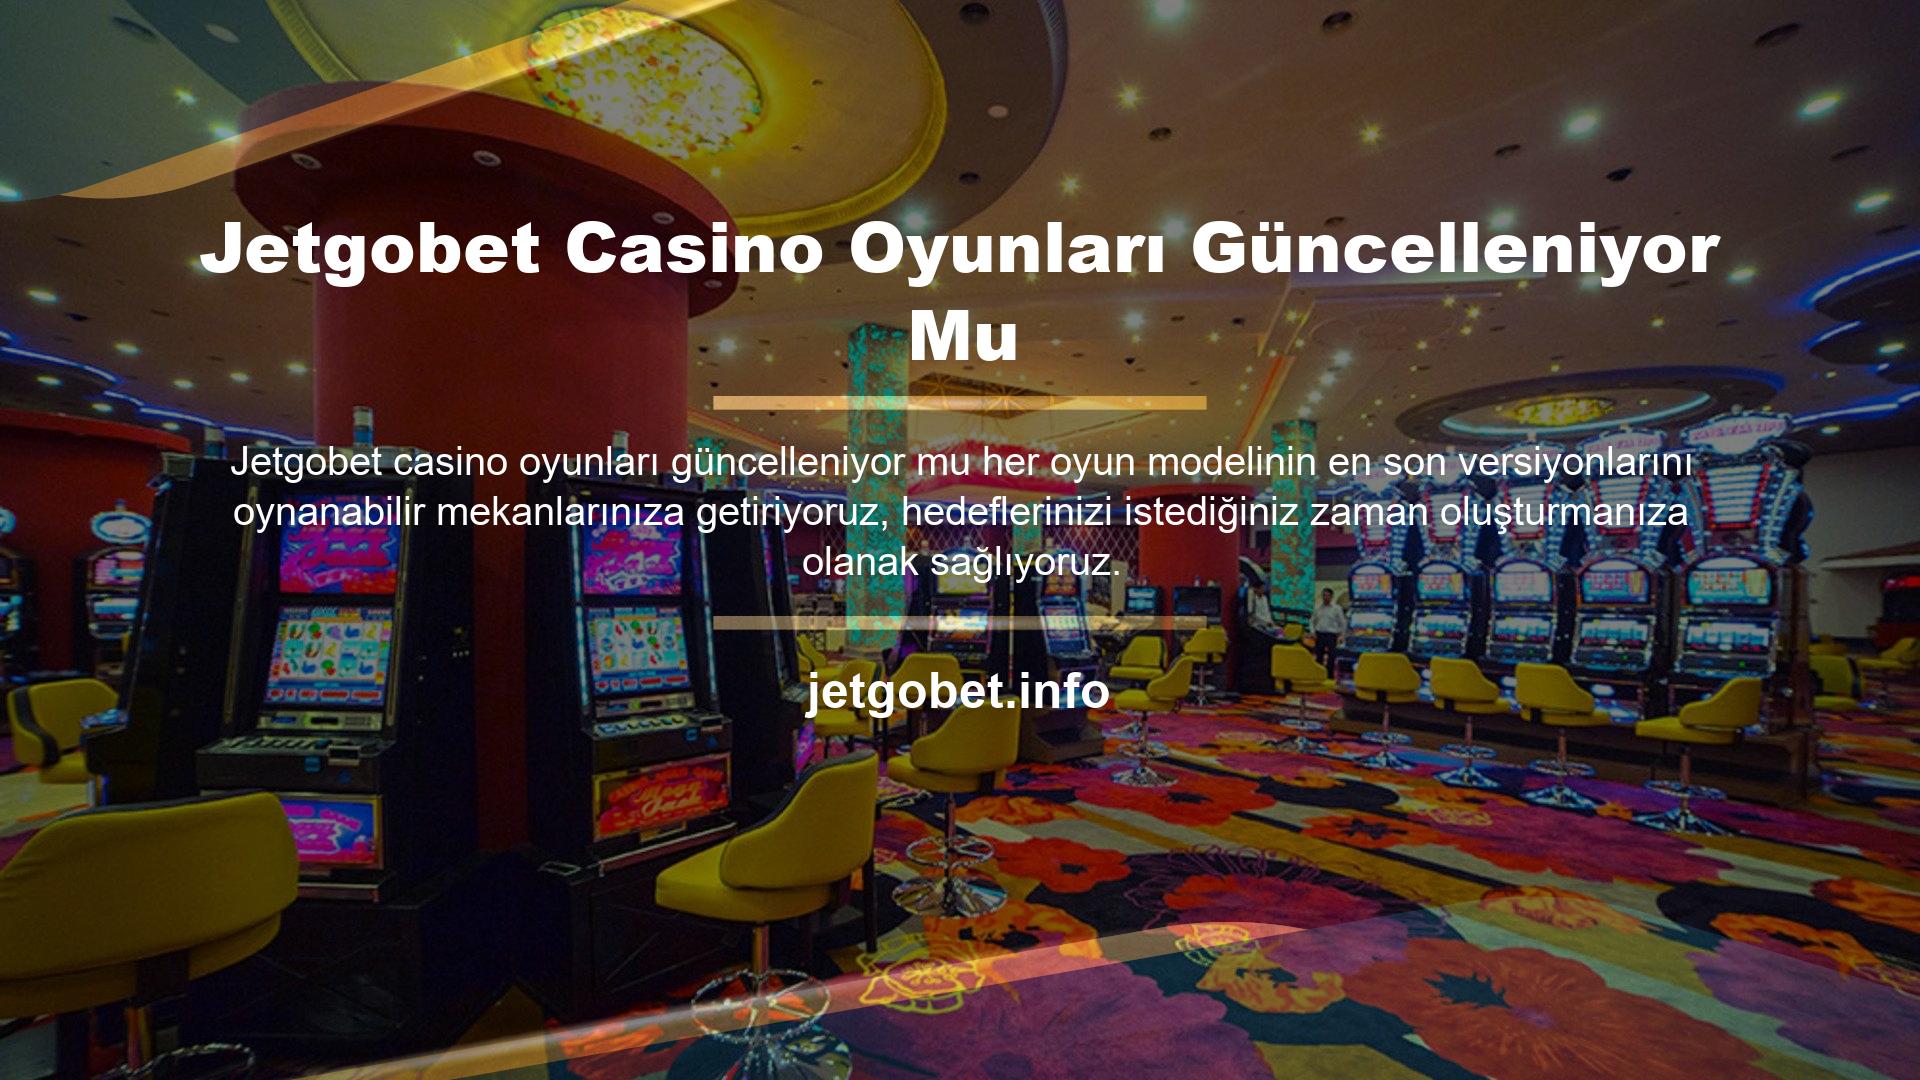 Bu nedenle tüm Jetgobet casino oyunlarının dikkatle incelenmesi gerekmektedir